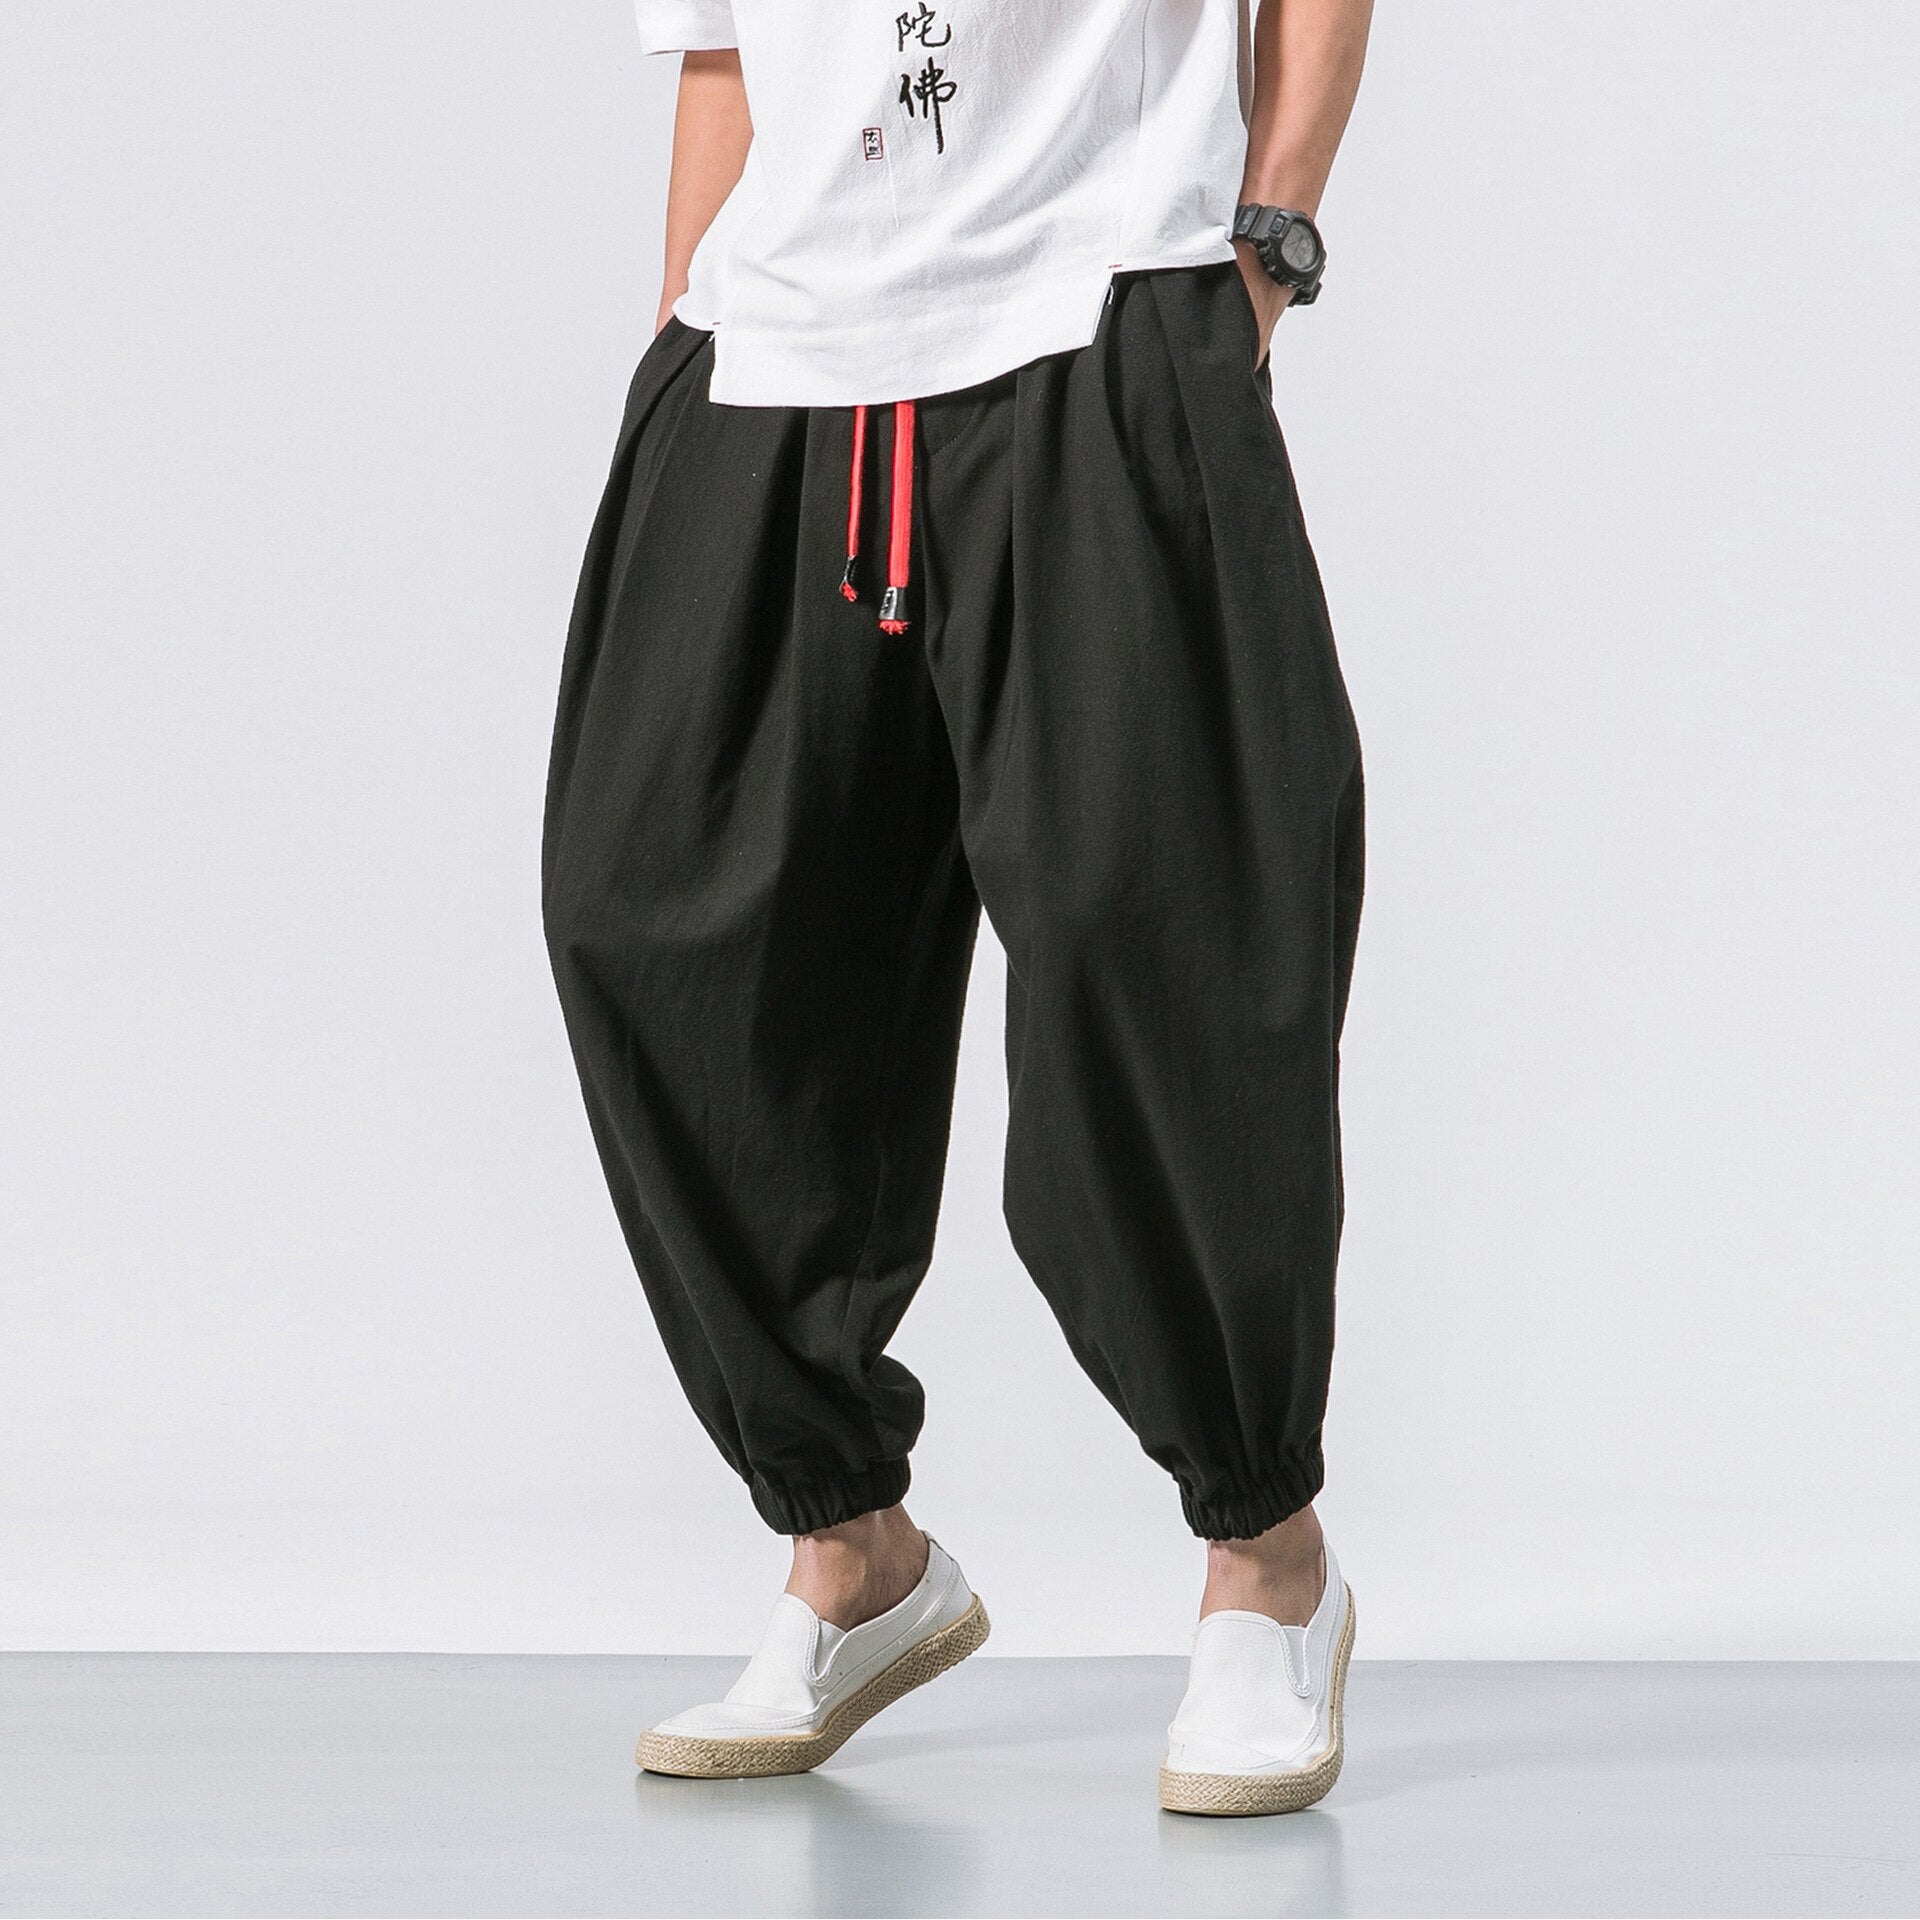 Wenkouban Mens Vintage Hip Hop Style Baggy Jeans New Chinese Style Harem Pants Men Streetwear Casual Joggers Mens Pants Cotton Linen Sweatpants Ankle-Length Men Trousers M-5XL